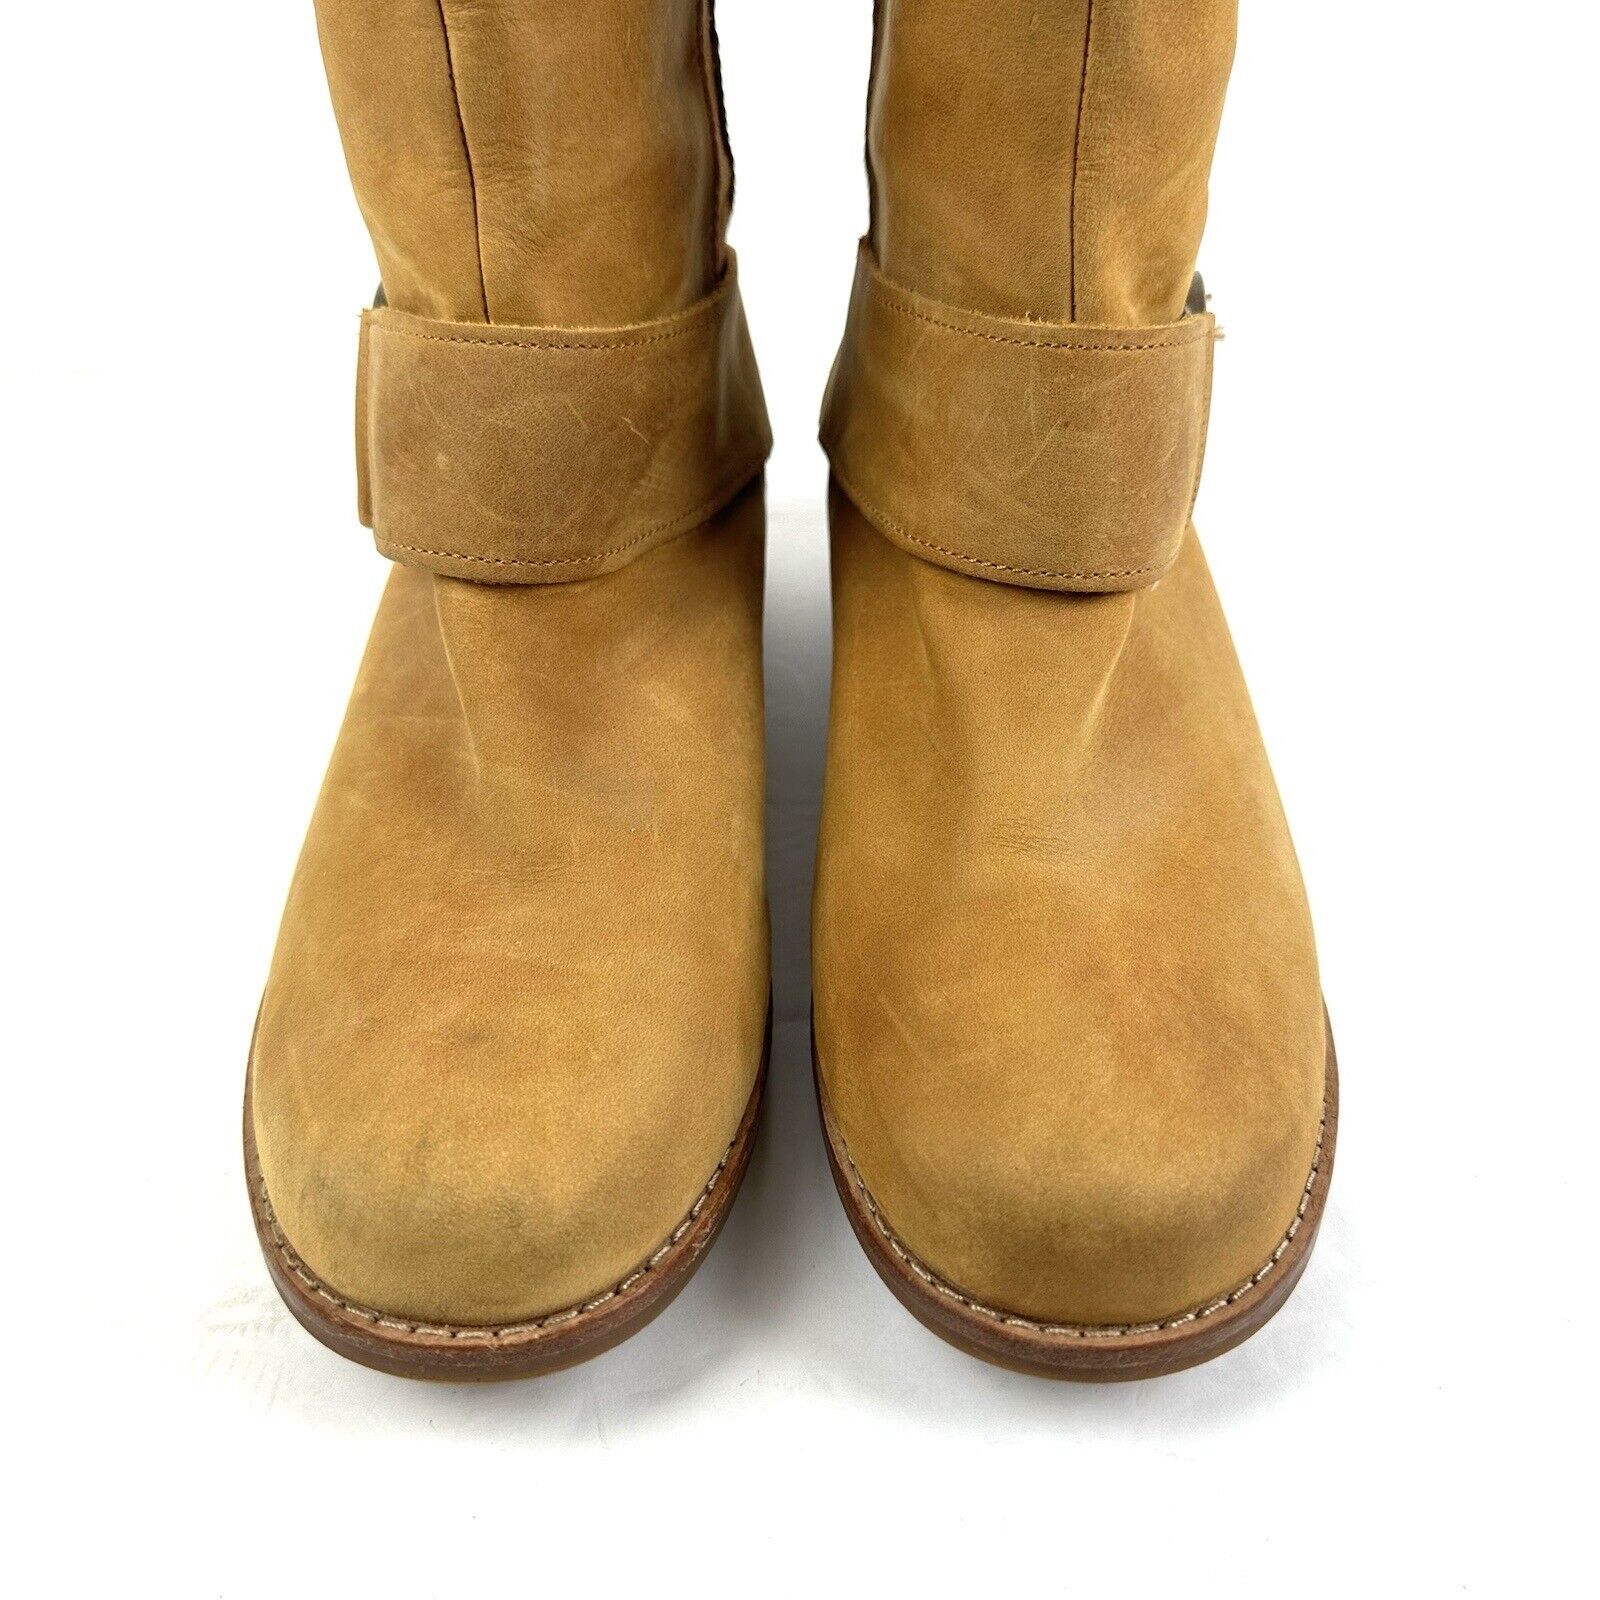 OluKai Holo Lio II Boots 8 Tan Nubuck Leather Bac… - image 3